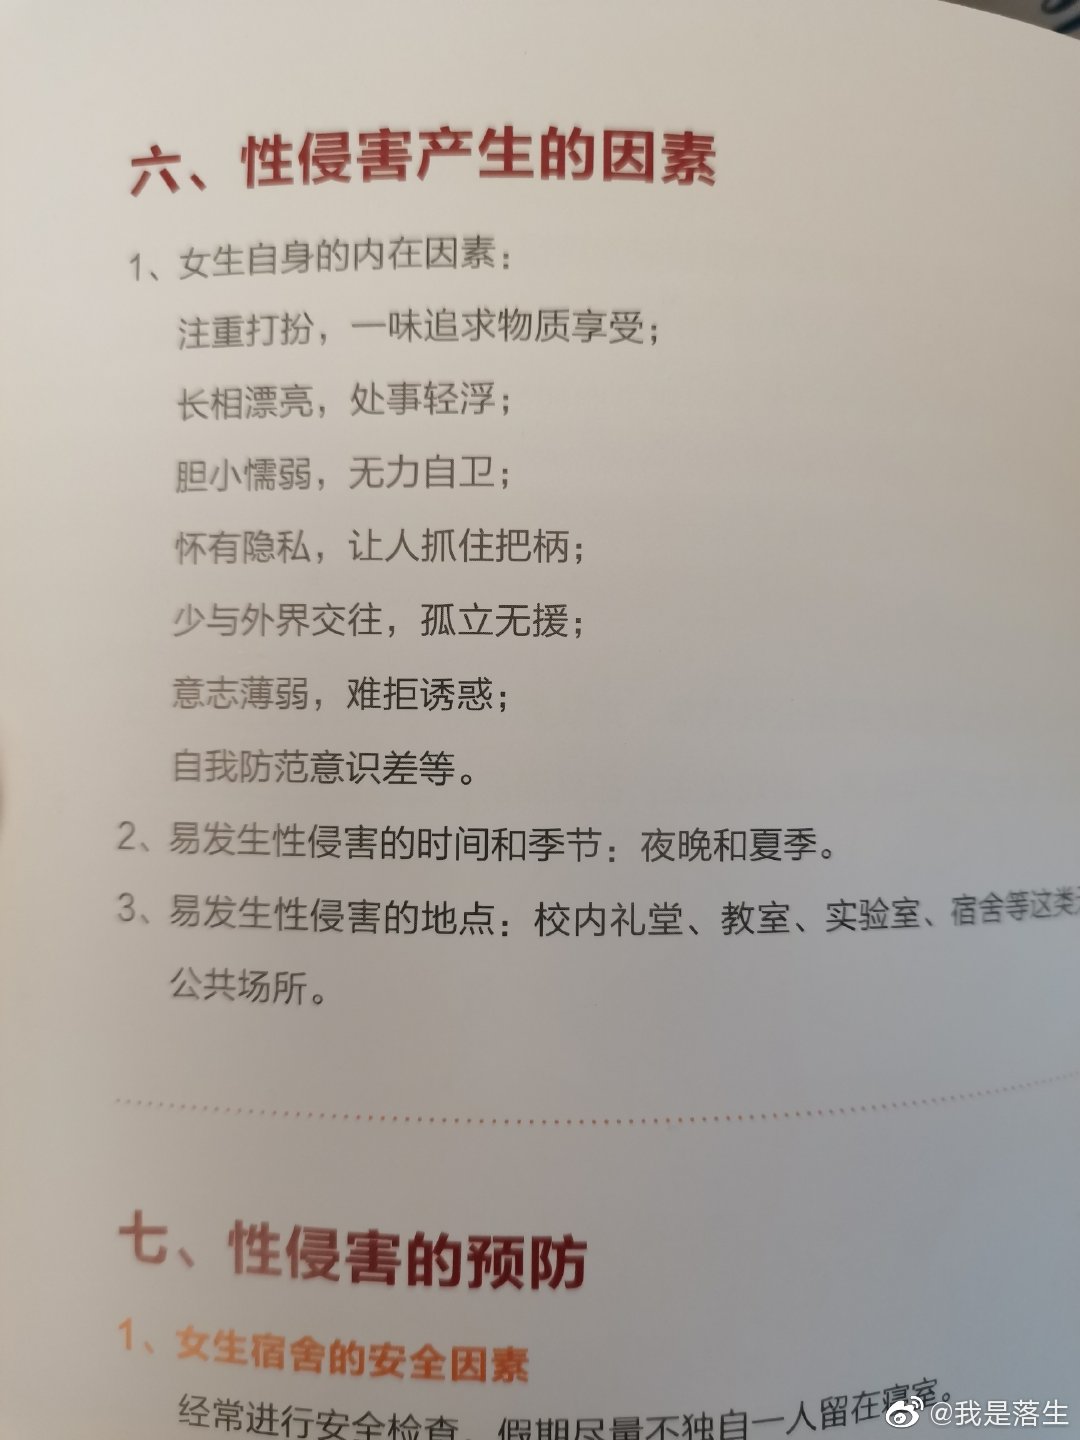 中国美术学院《新生安全知识手册》关于“性侵害产生的因素”章节。